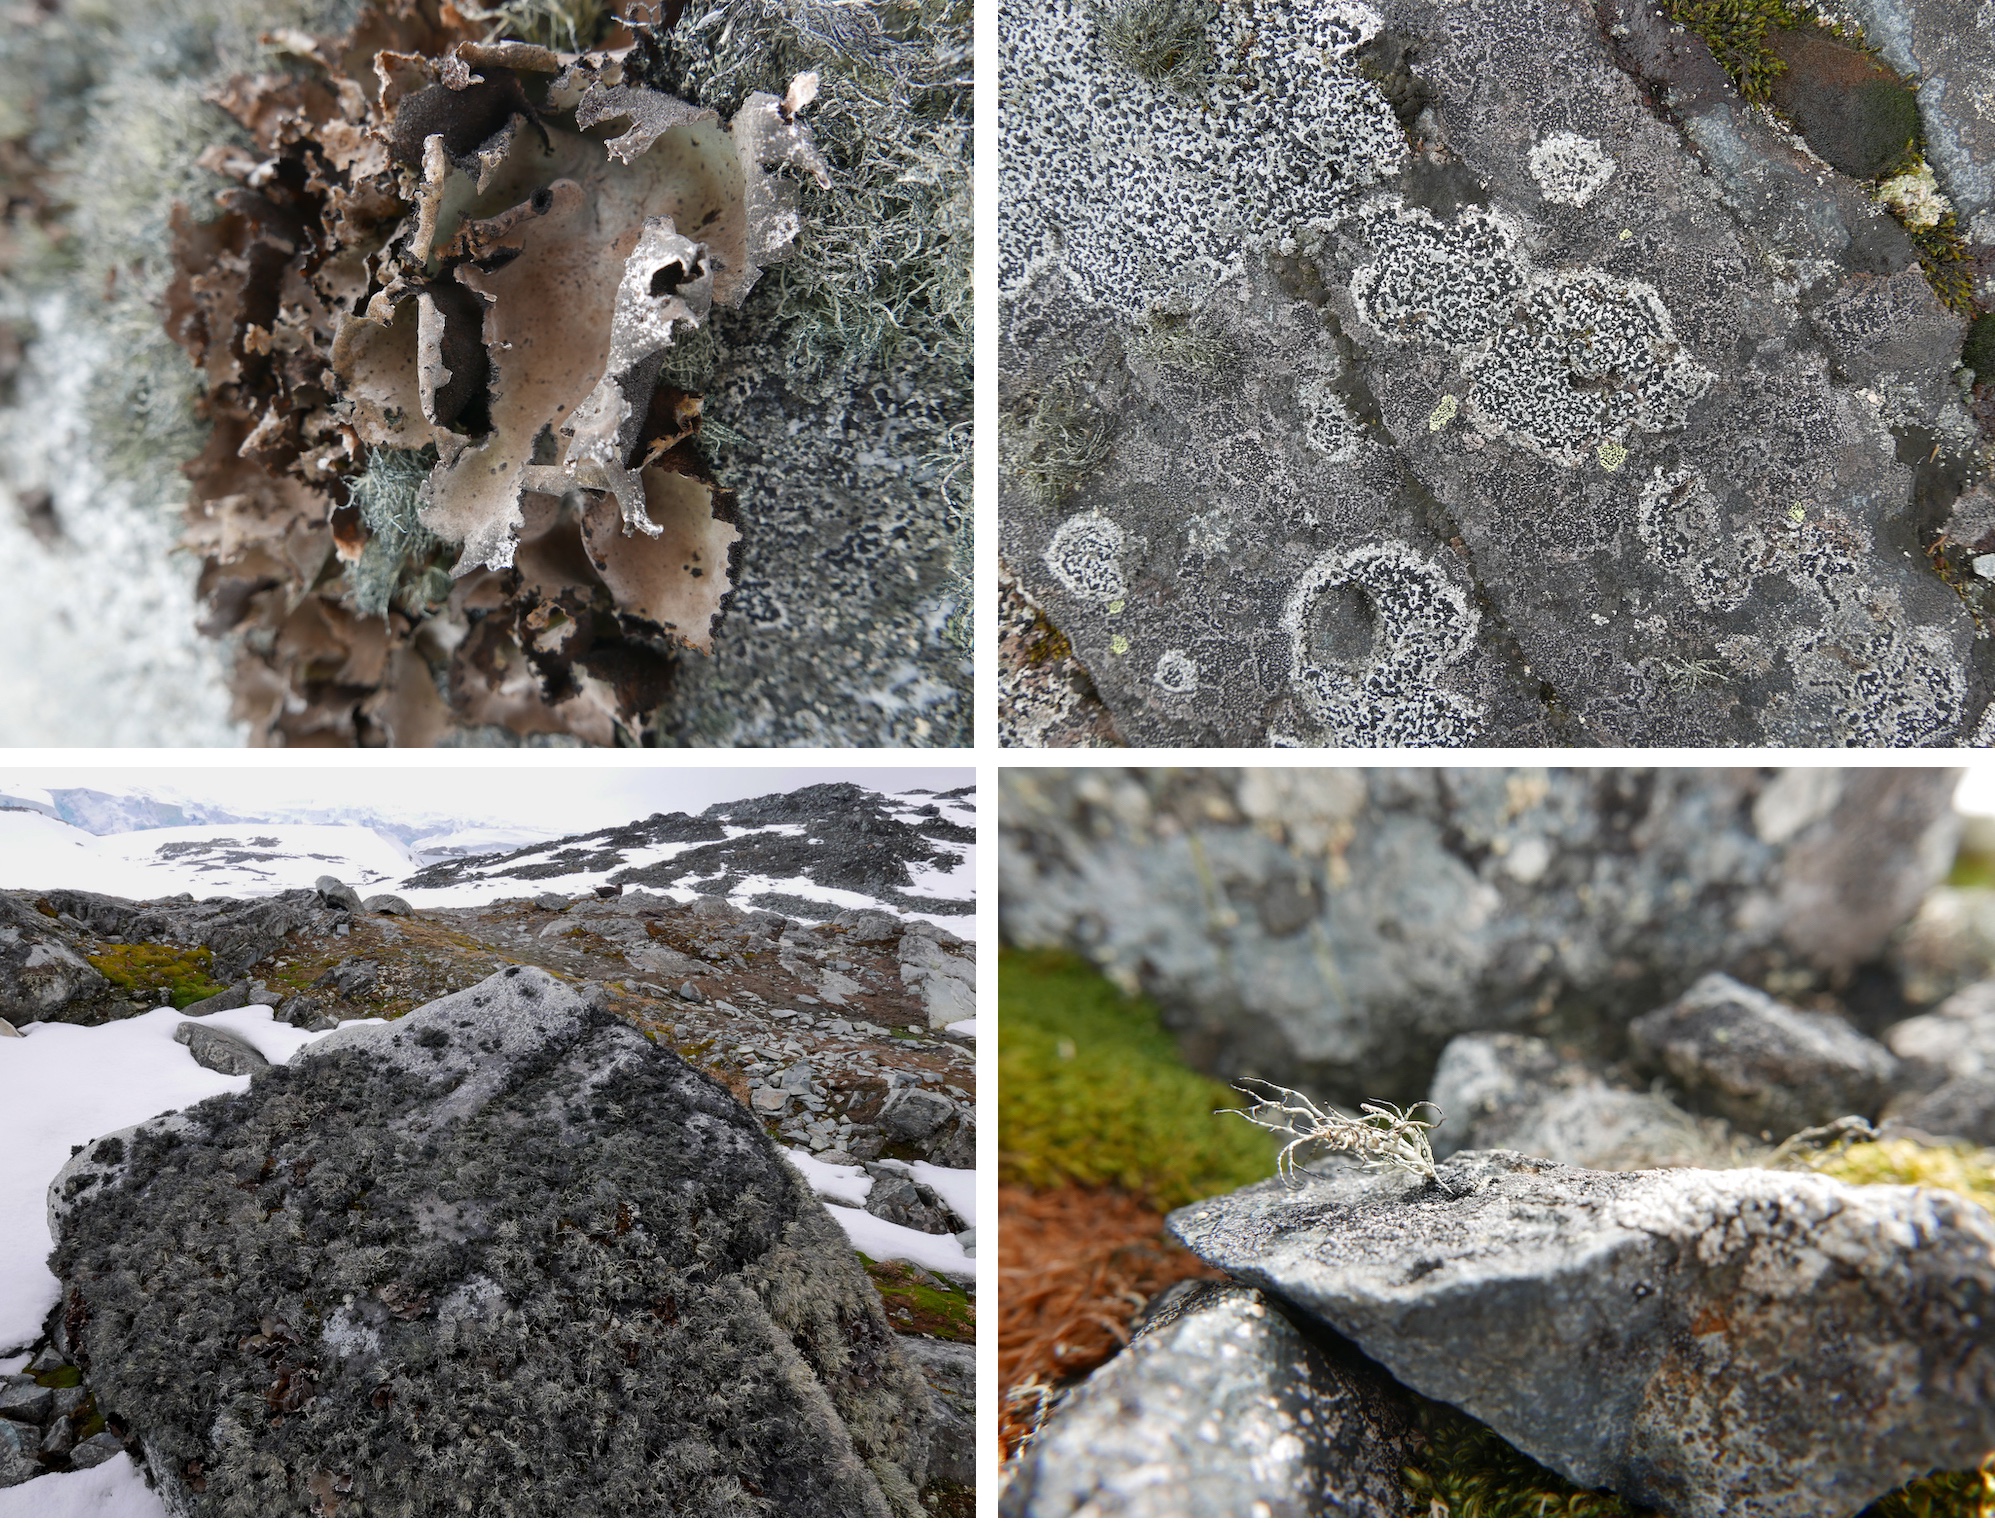 Several lichen species